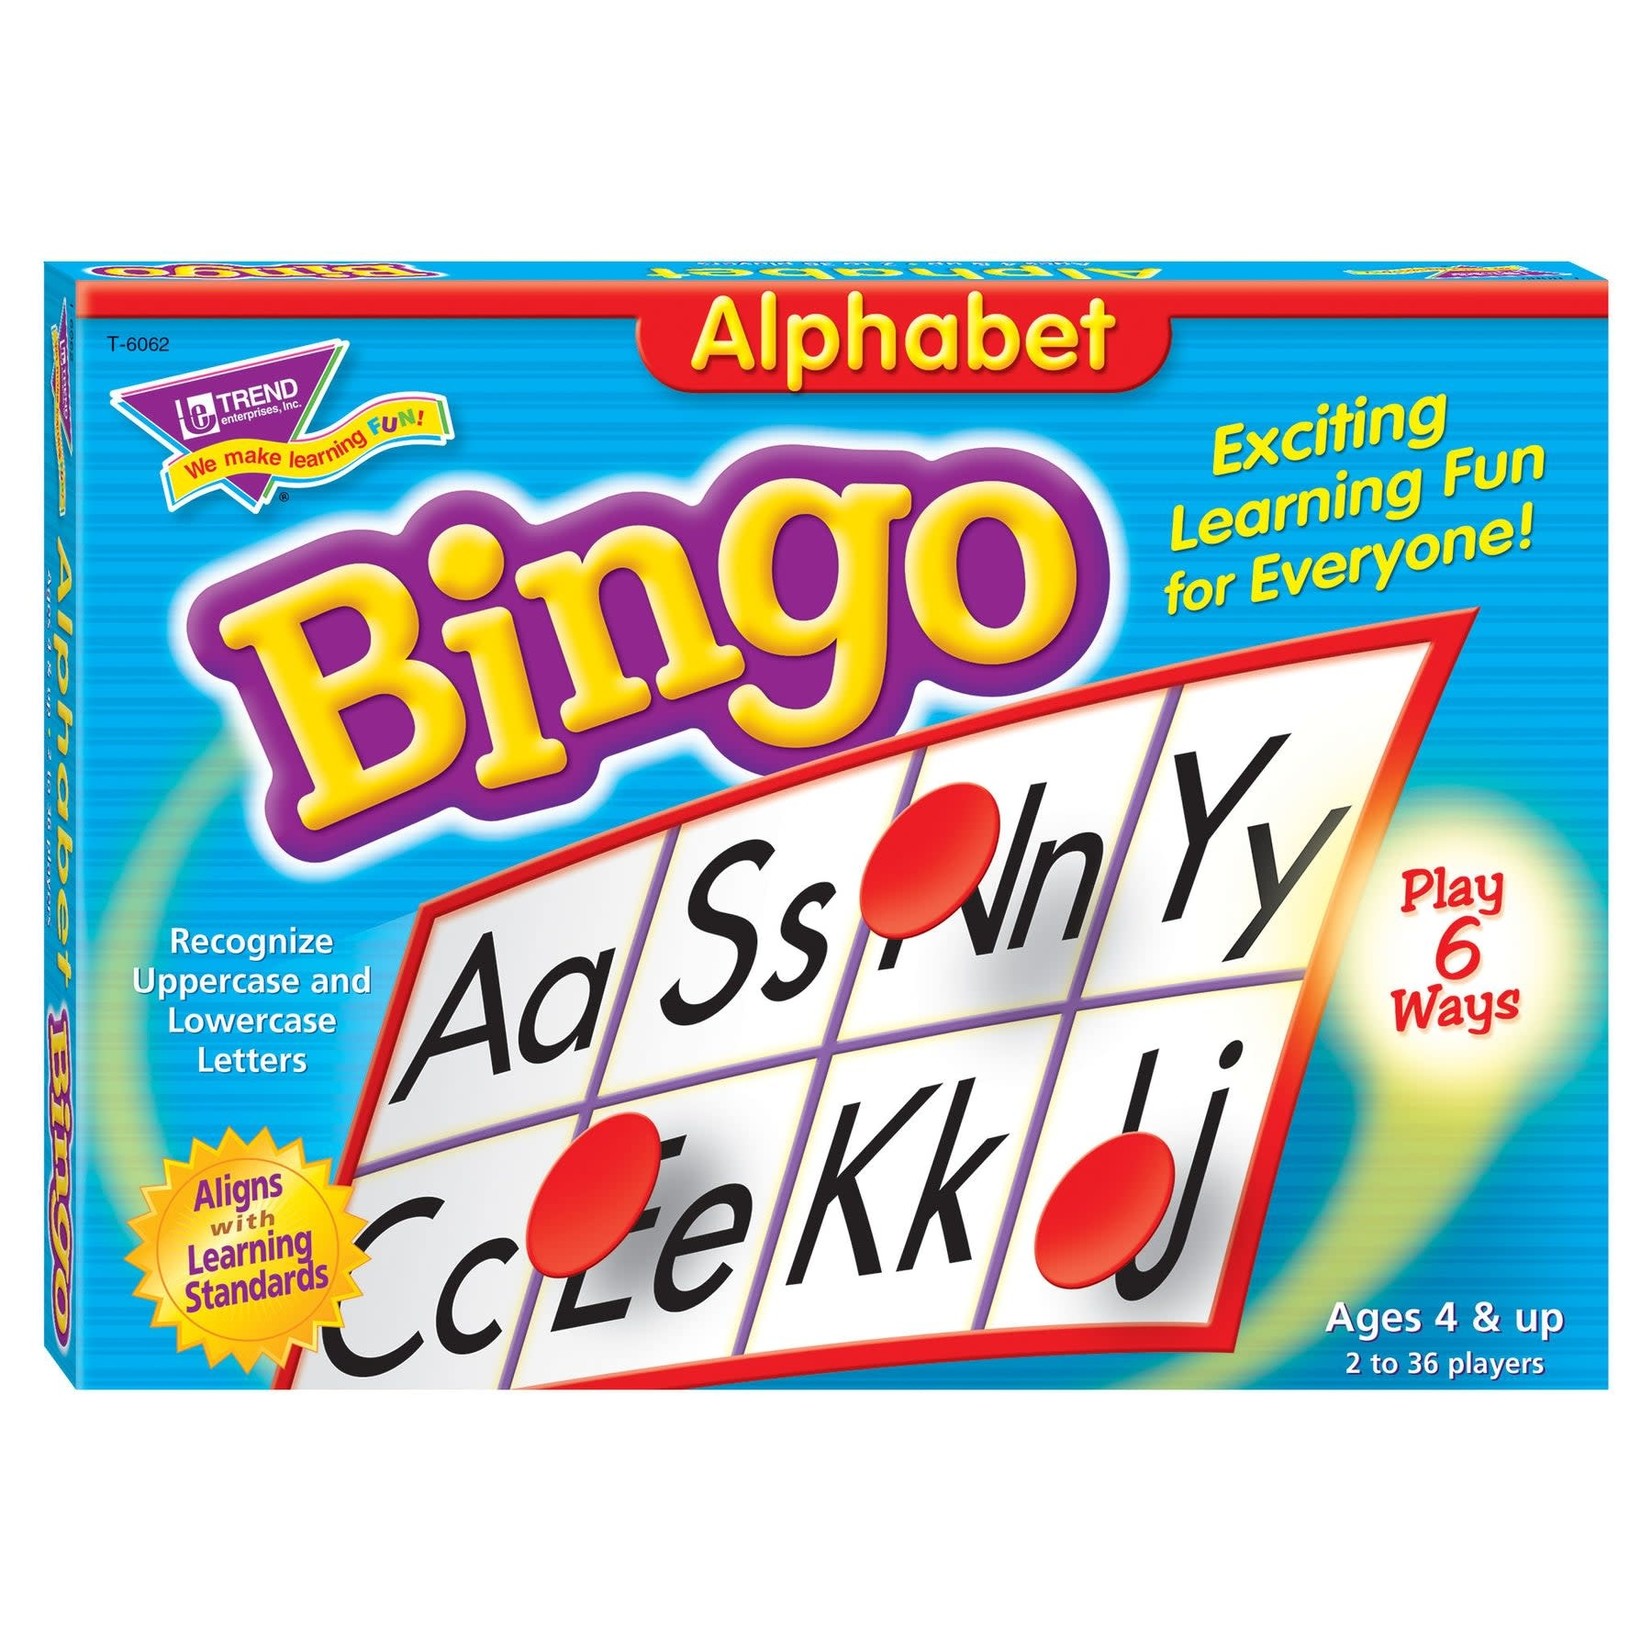 TREND ENTERPRISES INC Alphabet Bingo Game